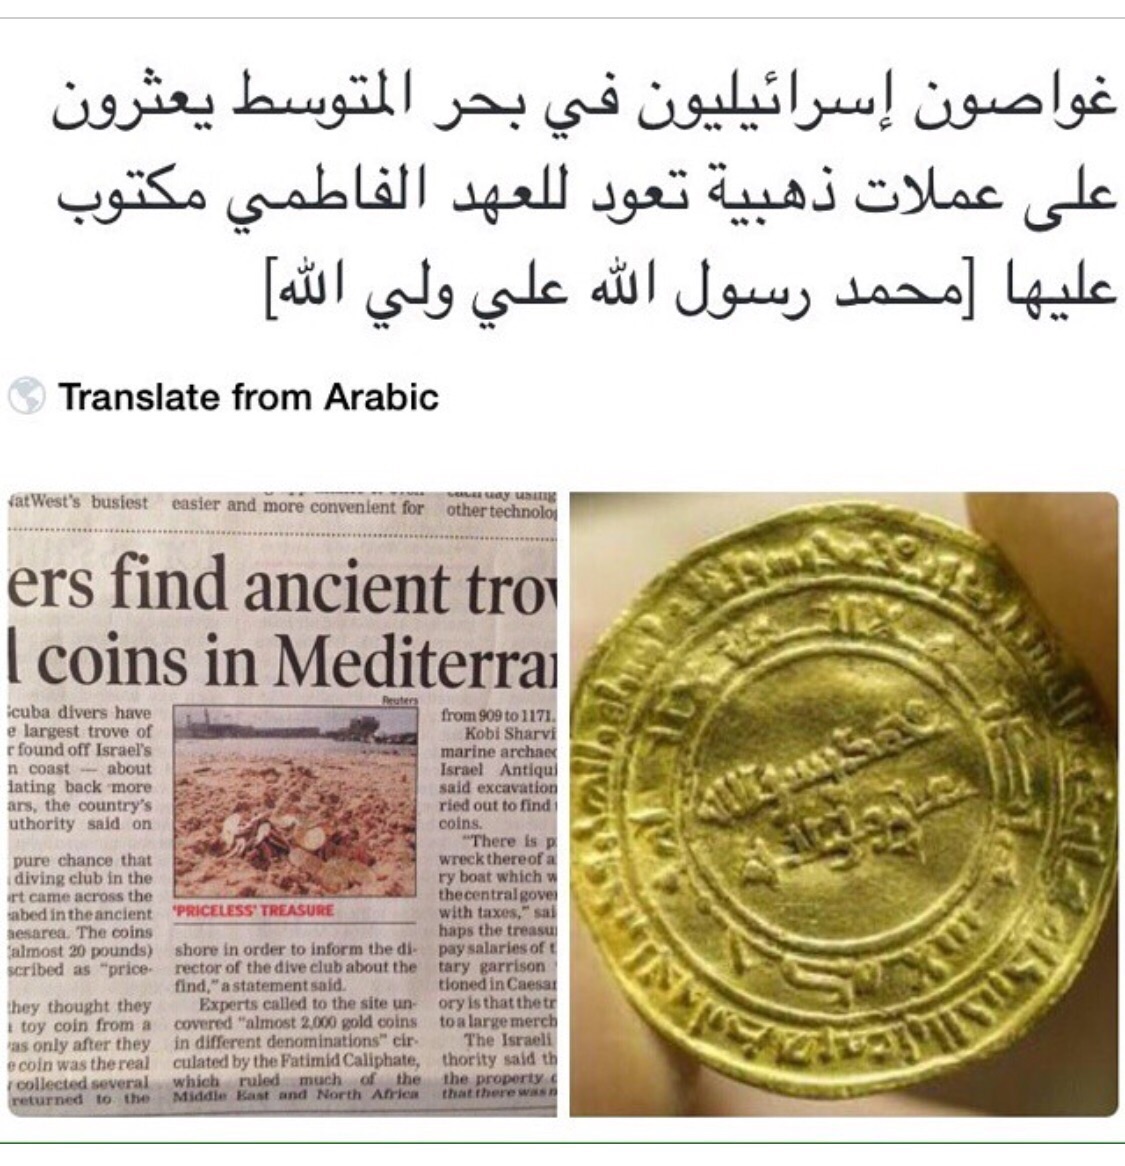 غواصون إسرائيليون في بحر المتوسط يعثرون على عملات ذهبية تعود للعهد الفاطمي مكتوب عليها محمد رسول الله علي ولي الله